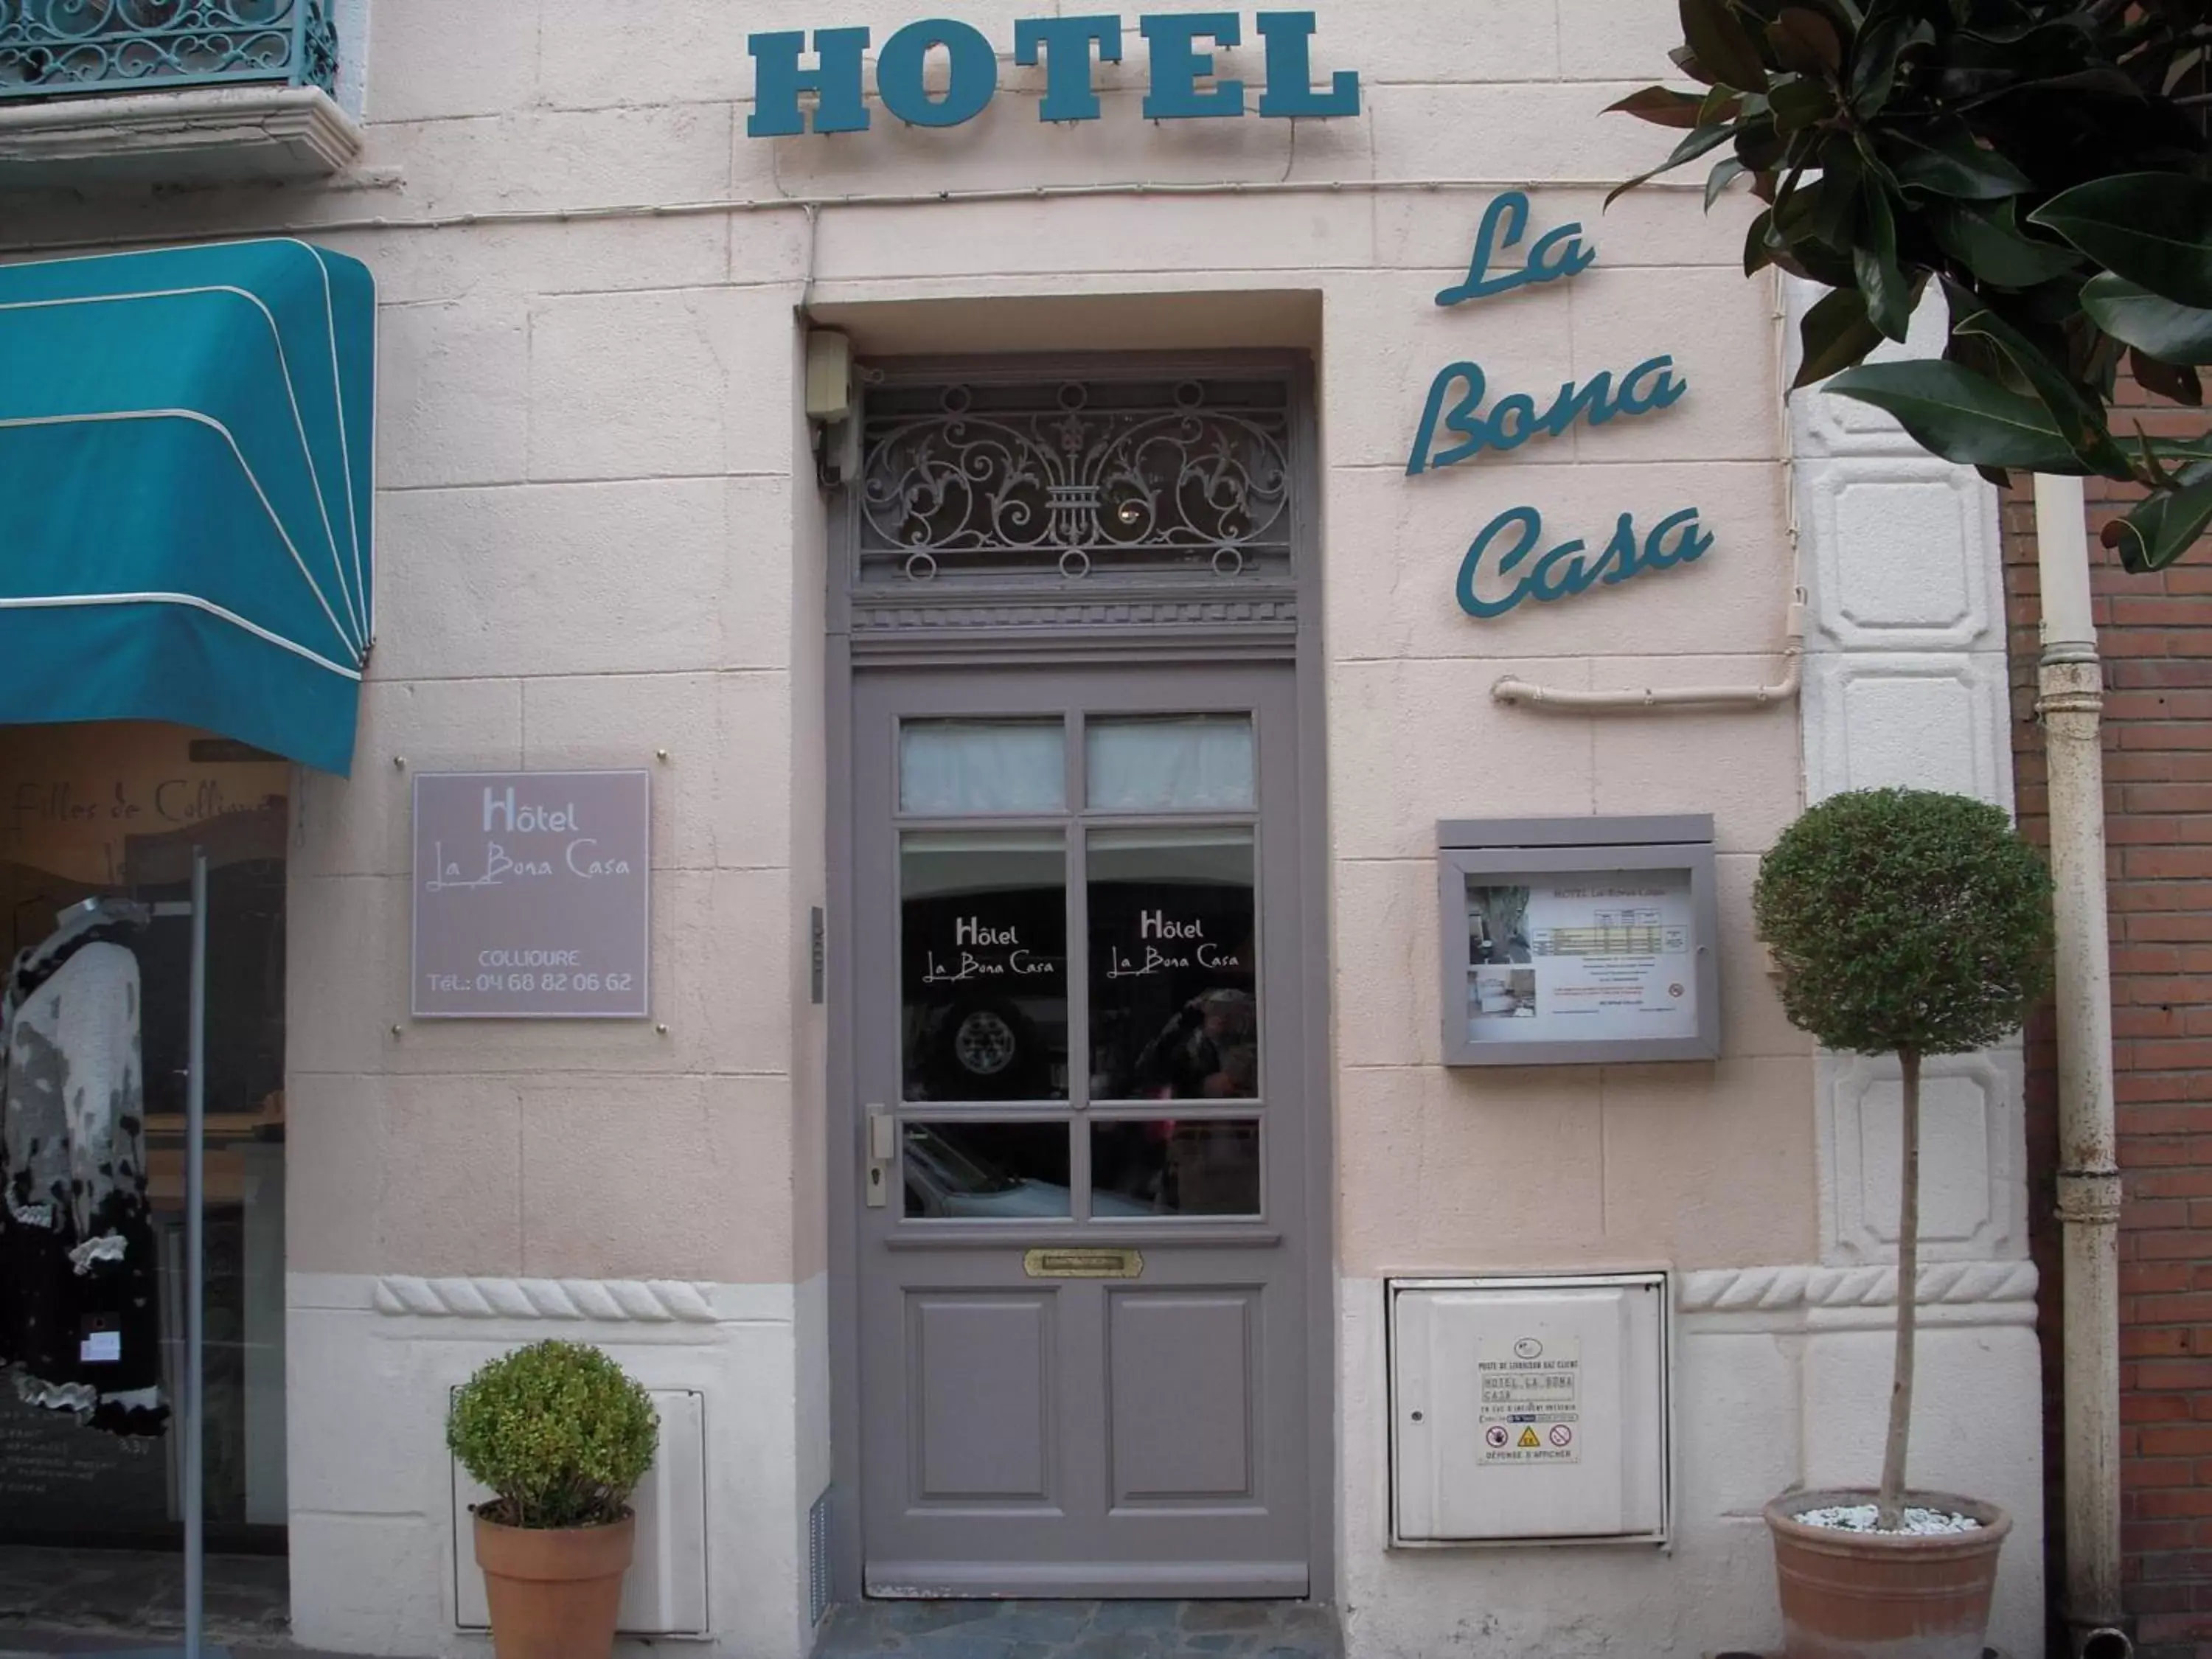 Facade/Entrance in Hôtel la Bona Casa